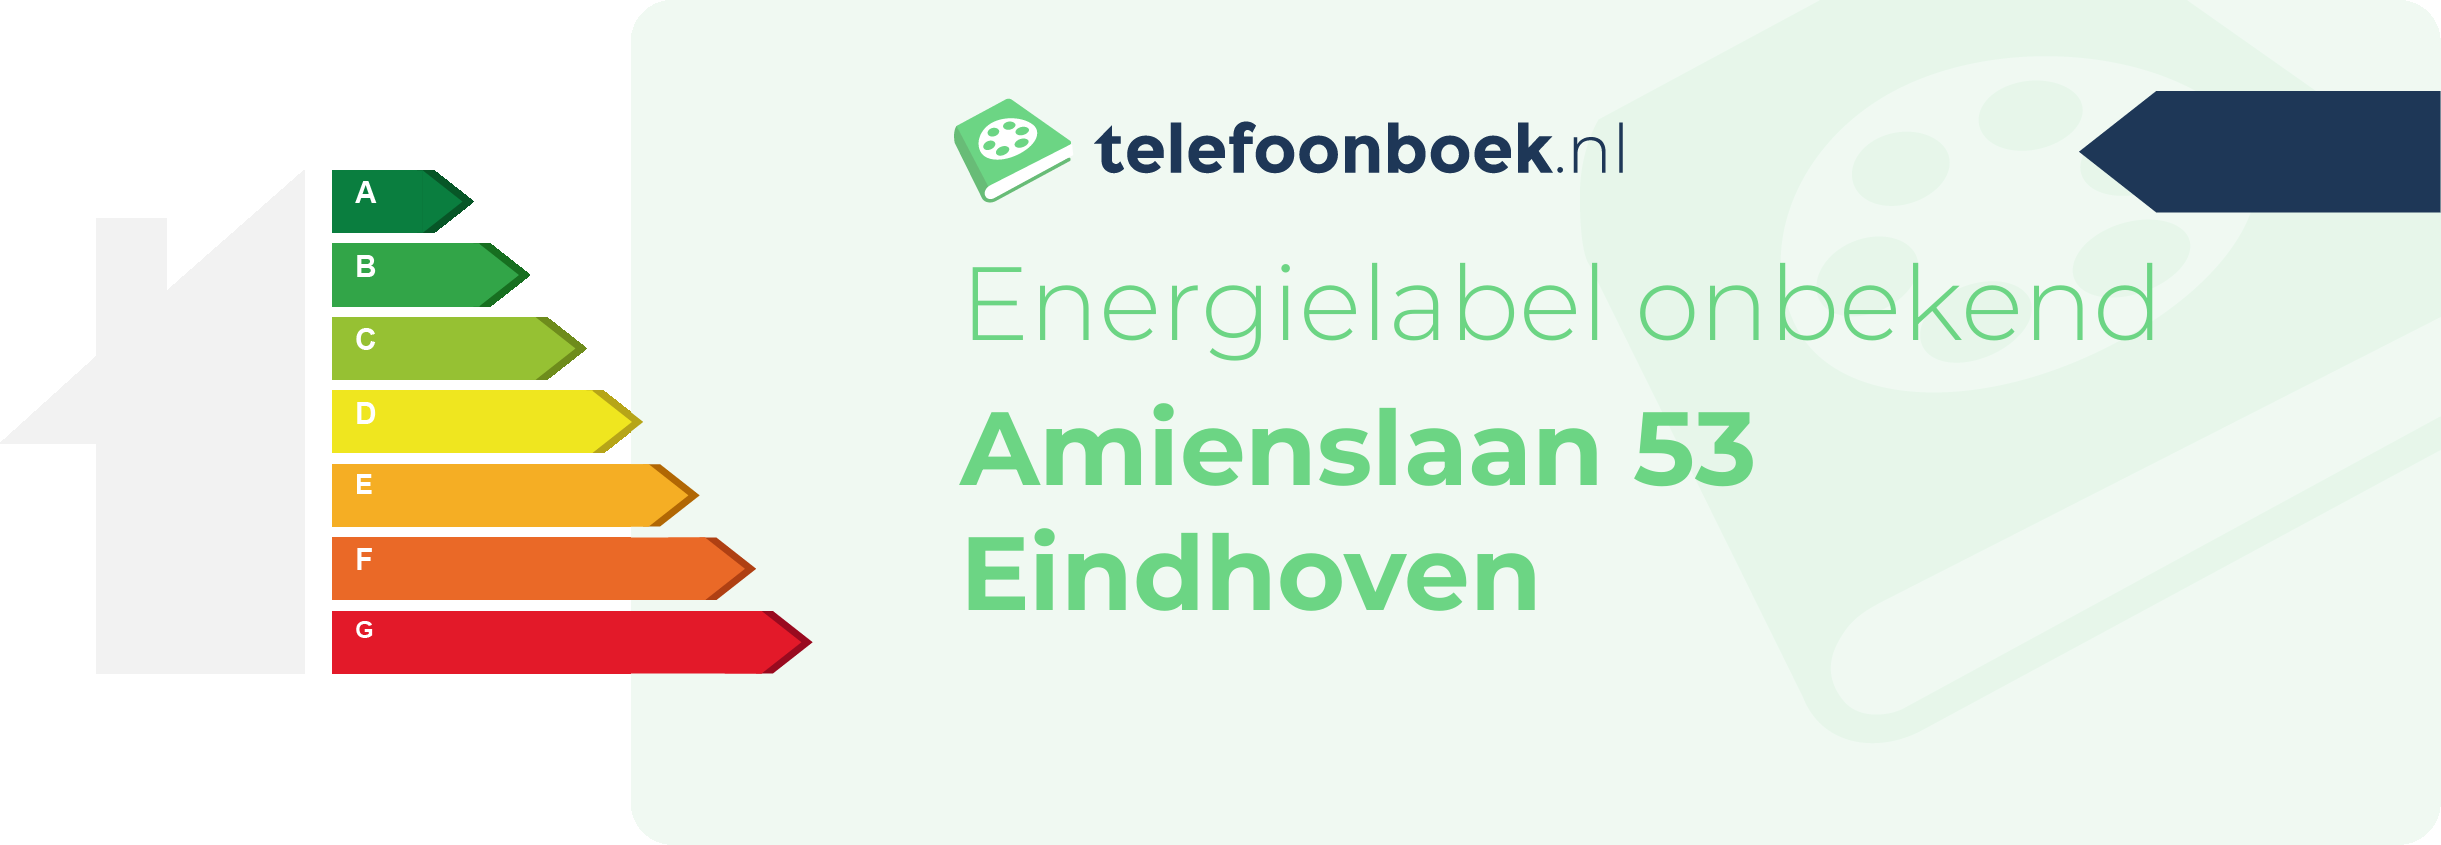 Energielabel Amienslaan 53 Eindhoven